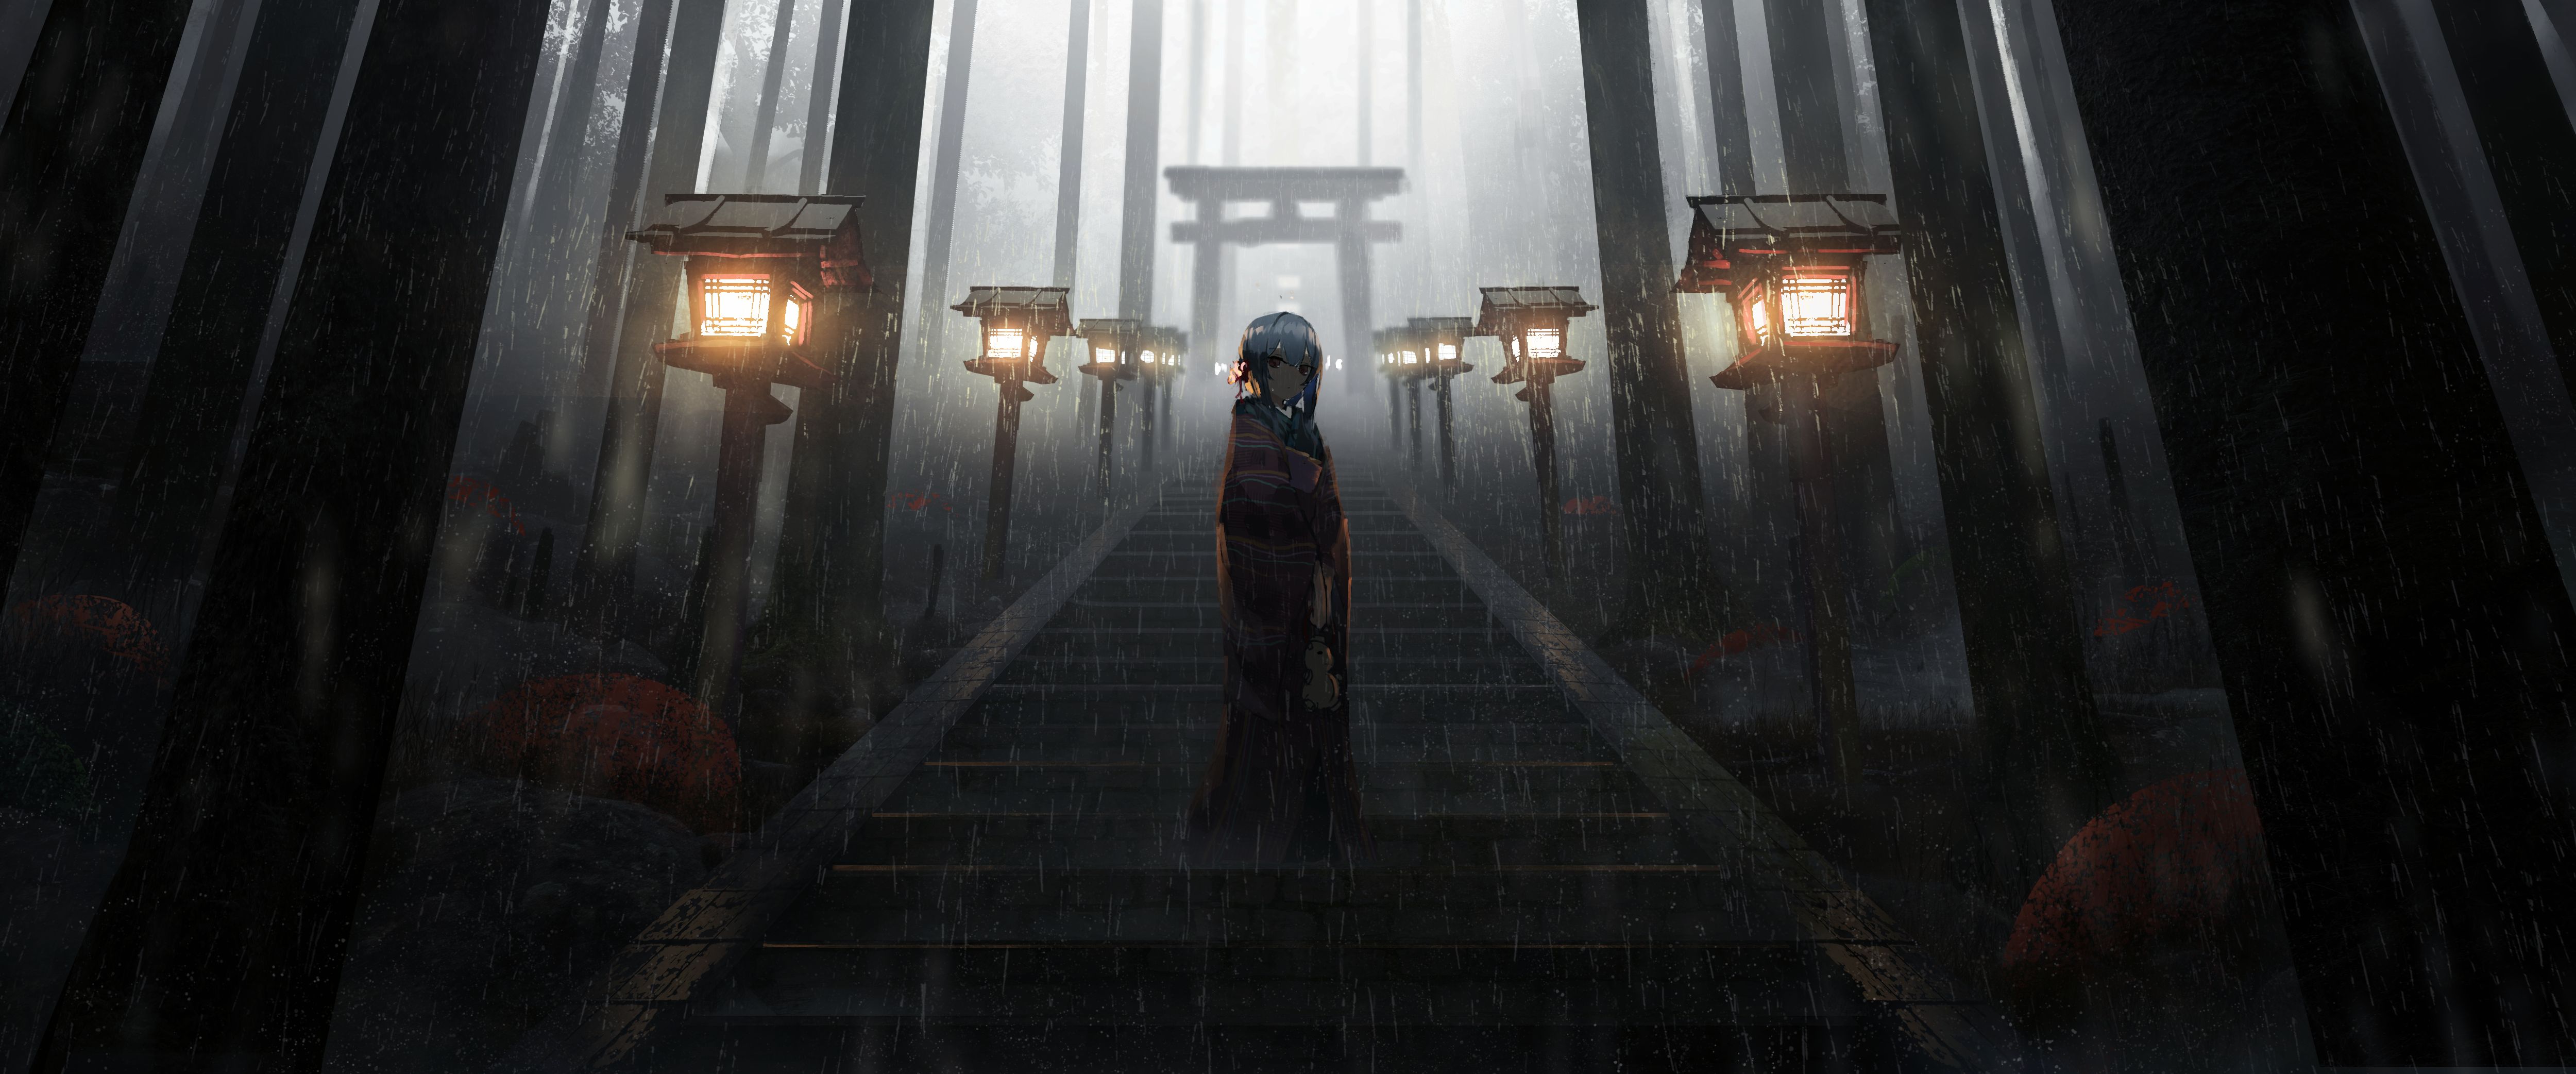 vertical wallpaper rain, girl, anime, fog, forest, stairs, torii